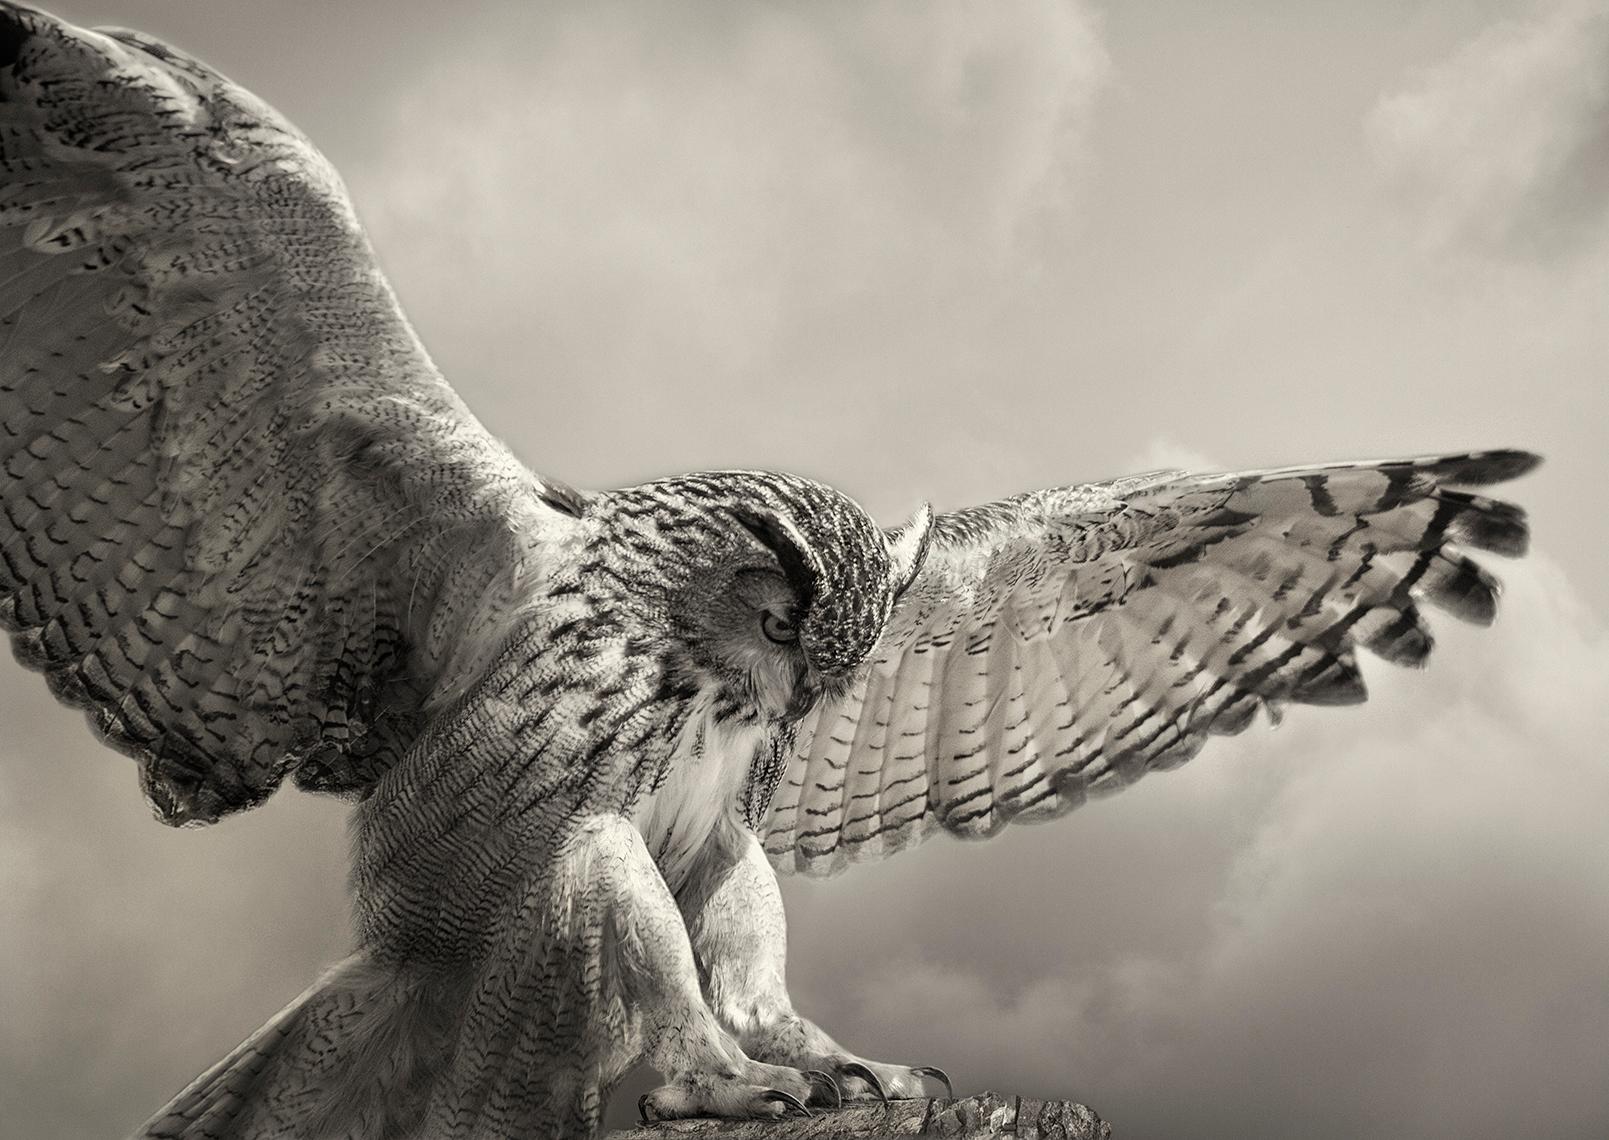 Eagle Owl Landing, Fotografie in limitierter Auflage, signiert, Platin/Palladiumdruck